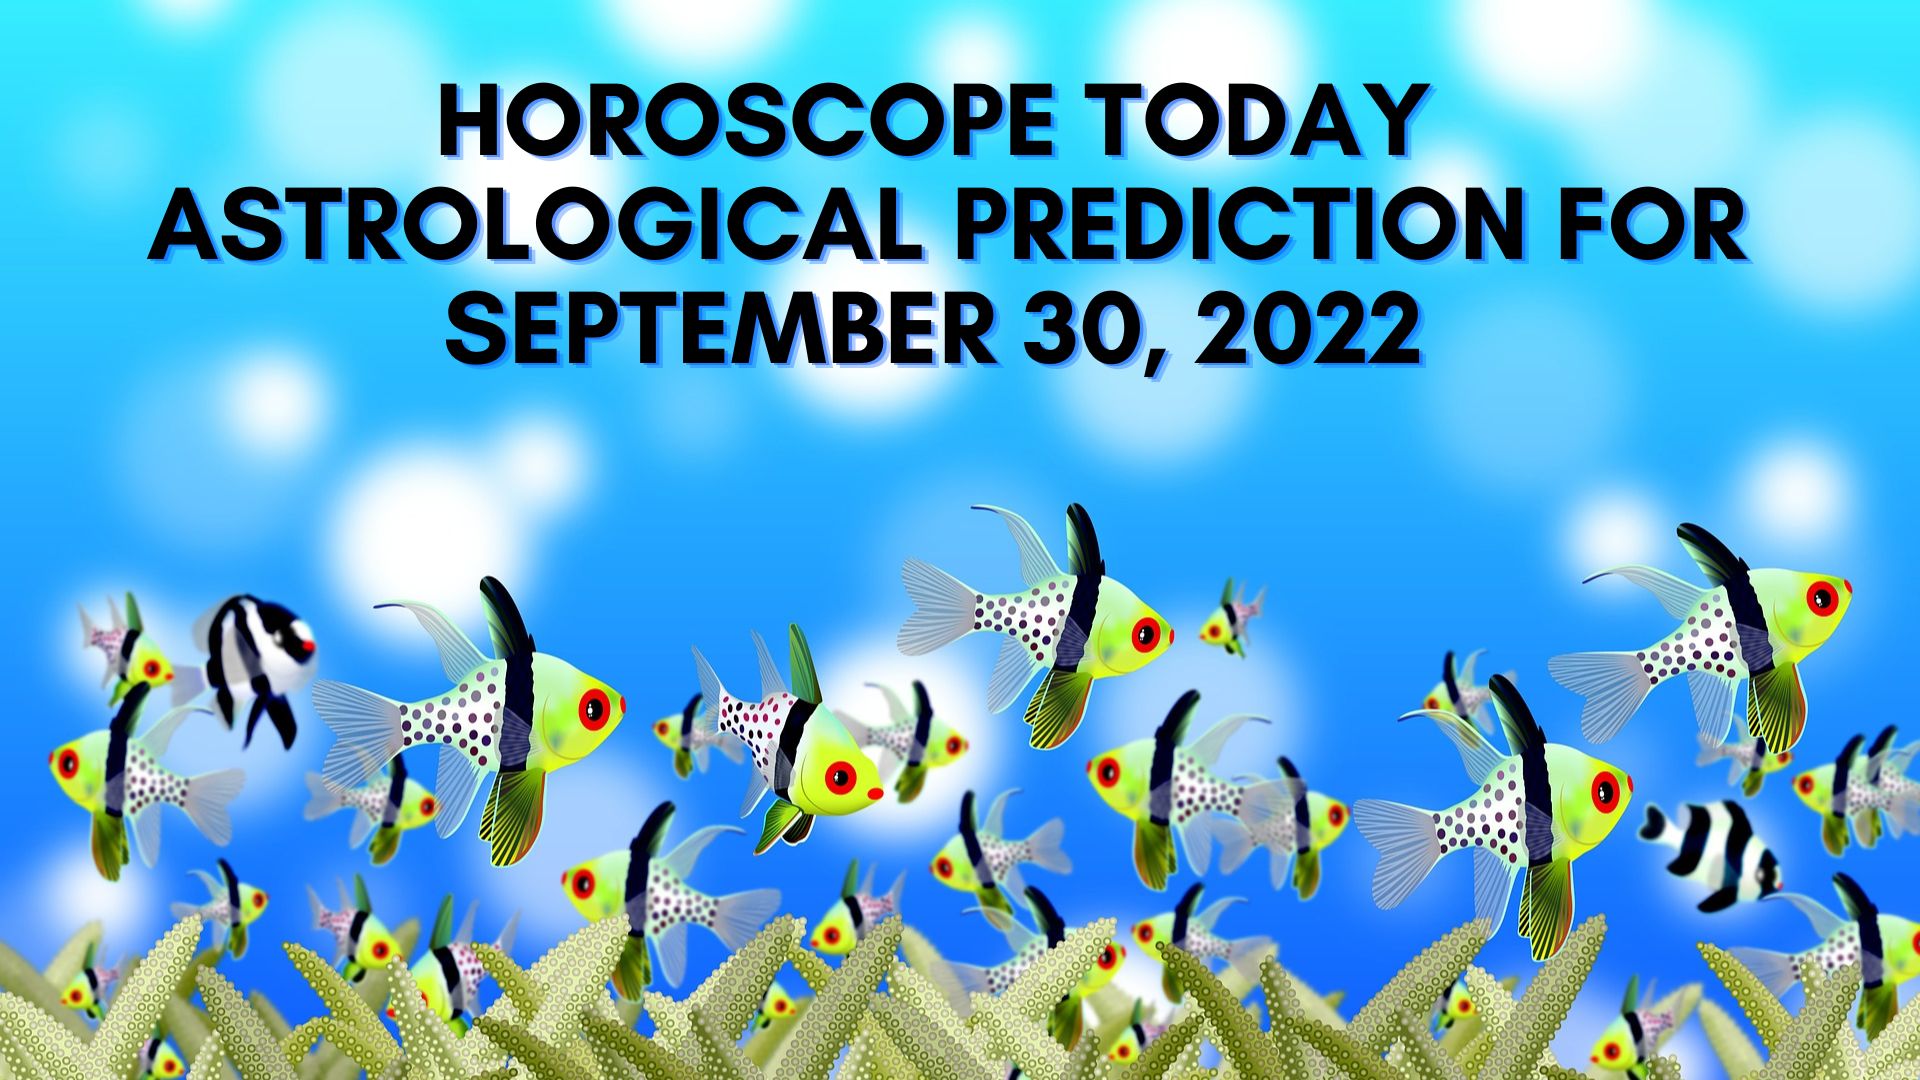 Horoscope Today - Astrological Prediction For September 30, 2022